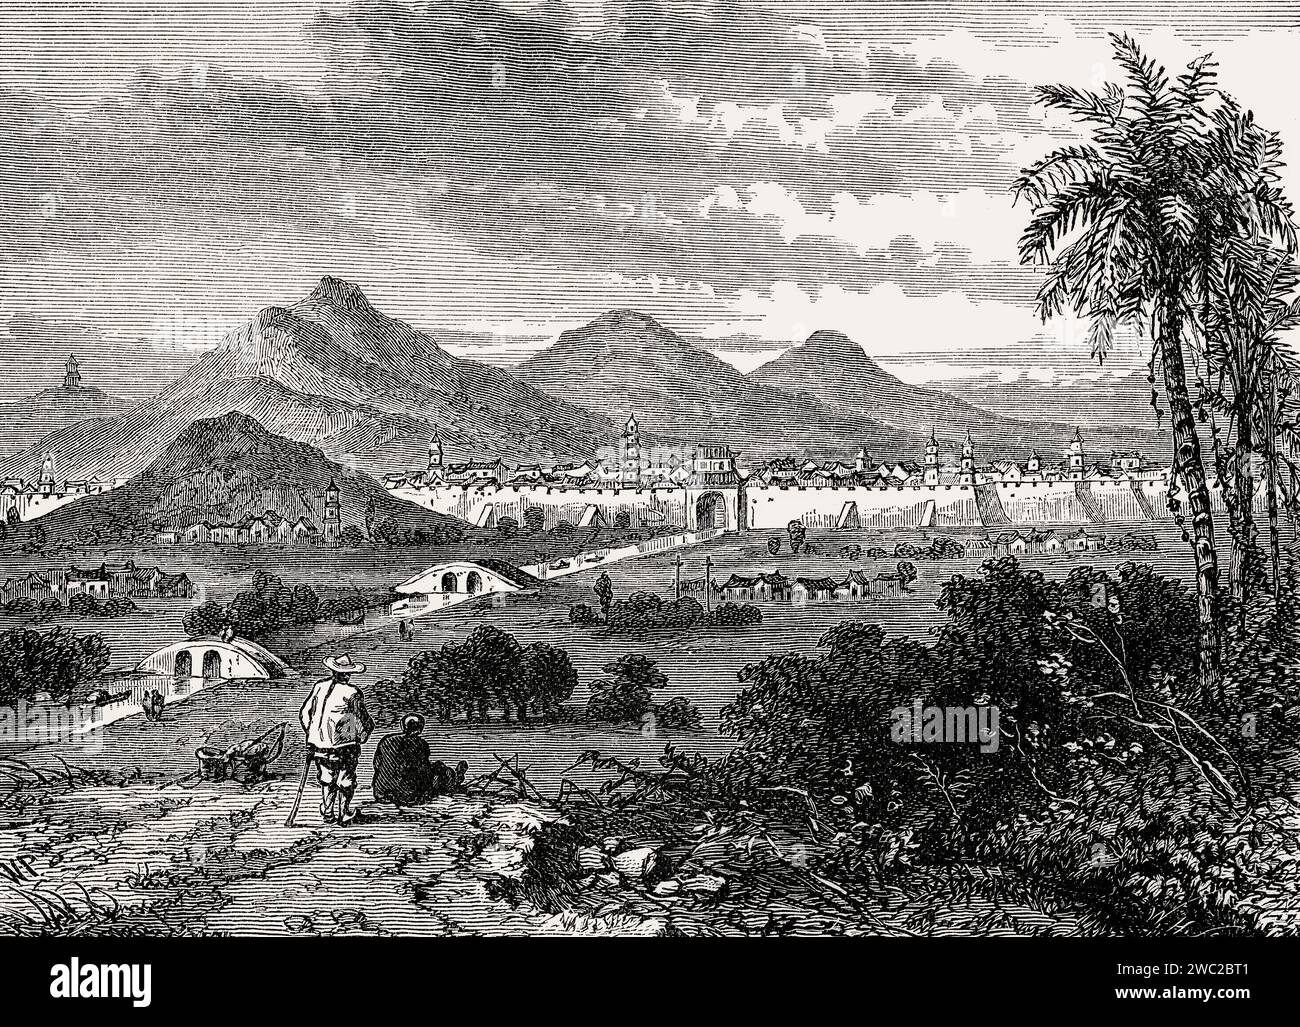 View of Nanjing or Nanking, Jiangsu province, China, c. 1840 Stock Photo